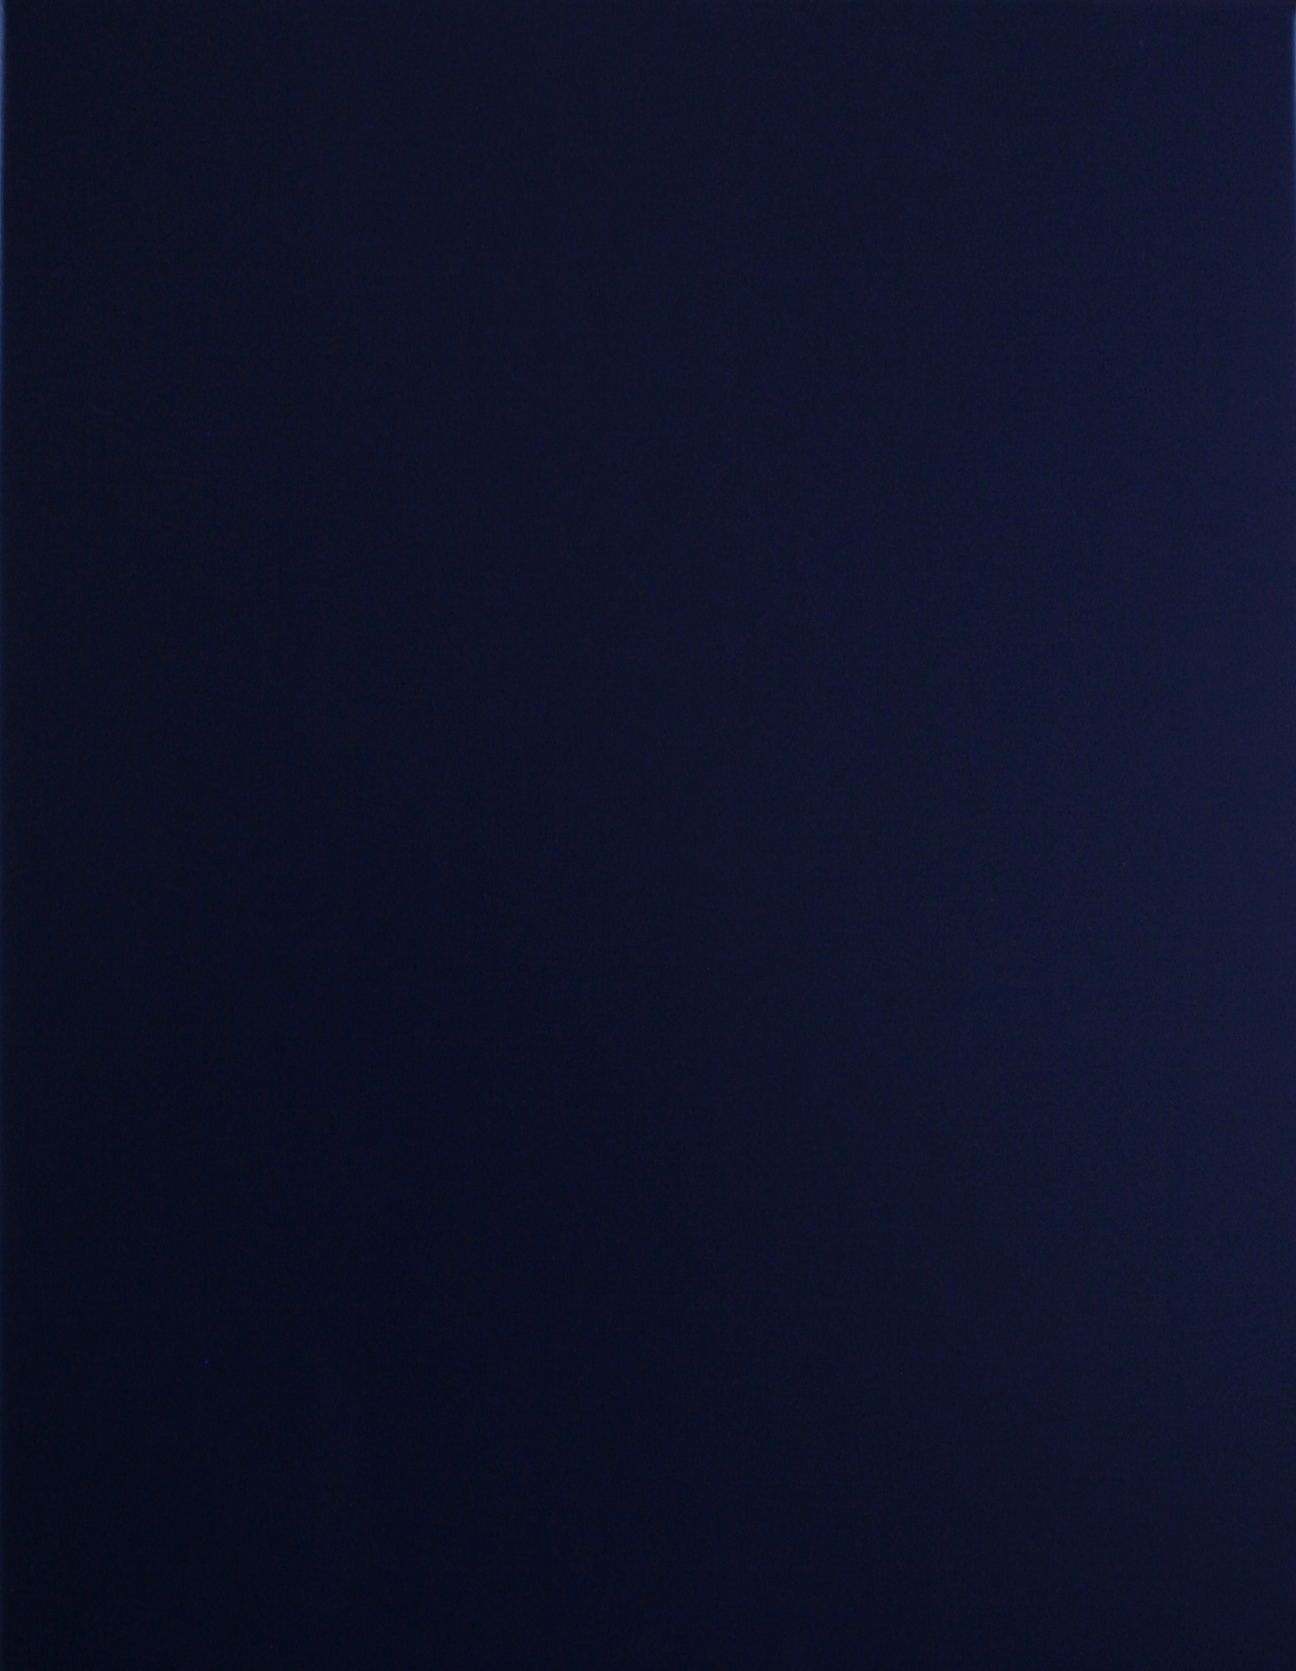 Dark Blue Solid Background